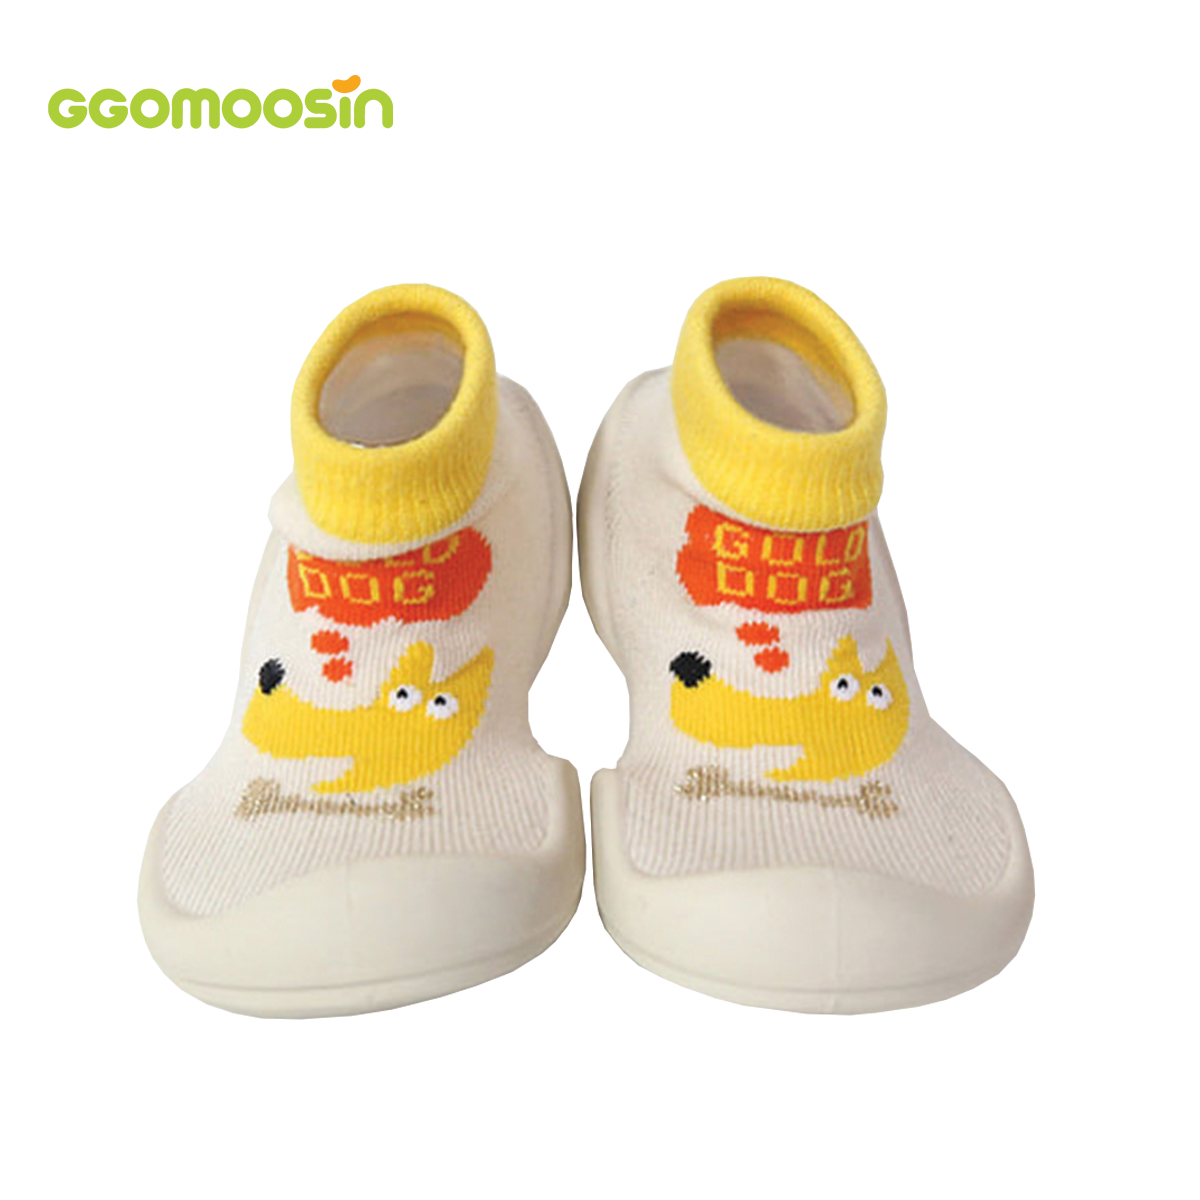 รองเท้าหัดเดิน GGOMOOSIN ลาย Gold Dog รองเท้า ถุงเท้า Baby Shoes Made in Korea รองเท้าเด็ก รองเท้าเด็กชาย รองเท้าเด็กผู้หญิง